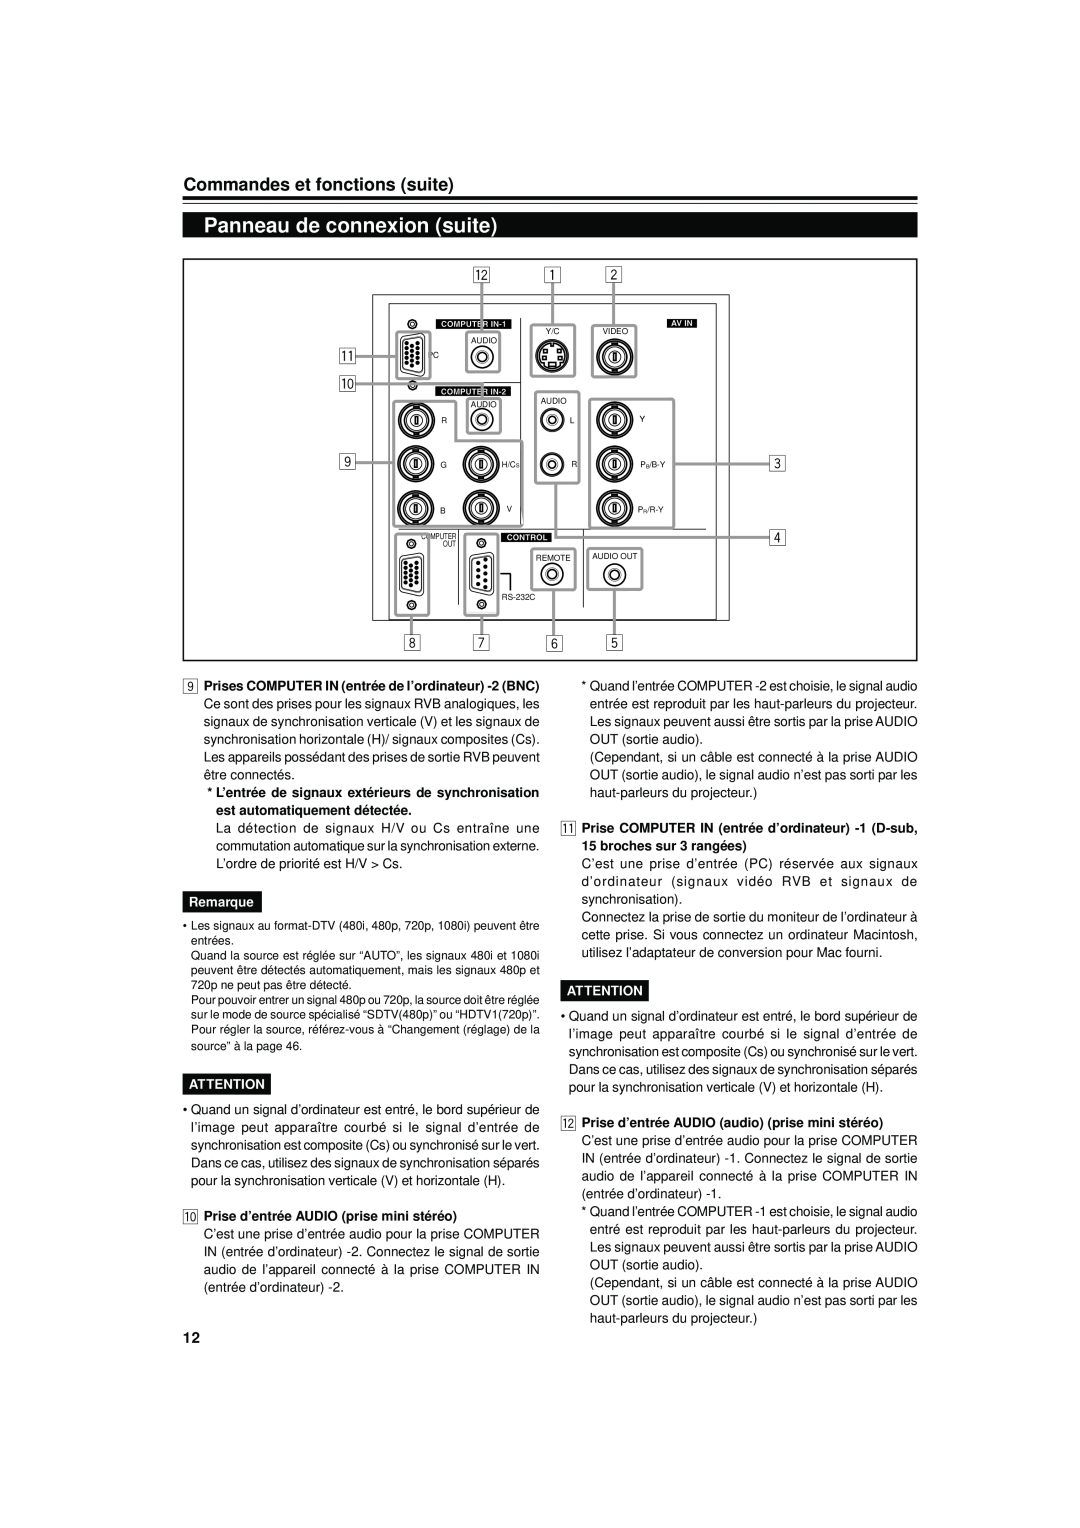 JVC DLA-S15U Panneau de connexion suite, Commandes et fonctions suite, Remarque, p Prise d’entrée AUDIO prise mini stéréo 